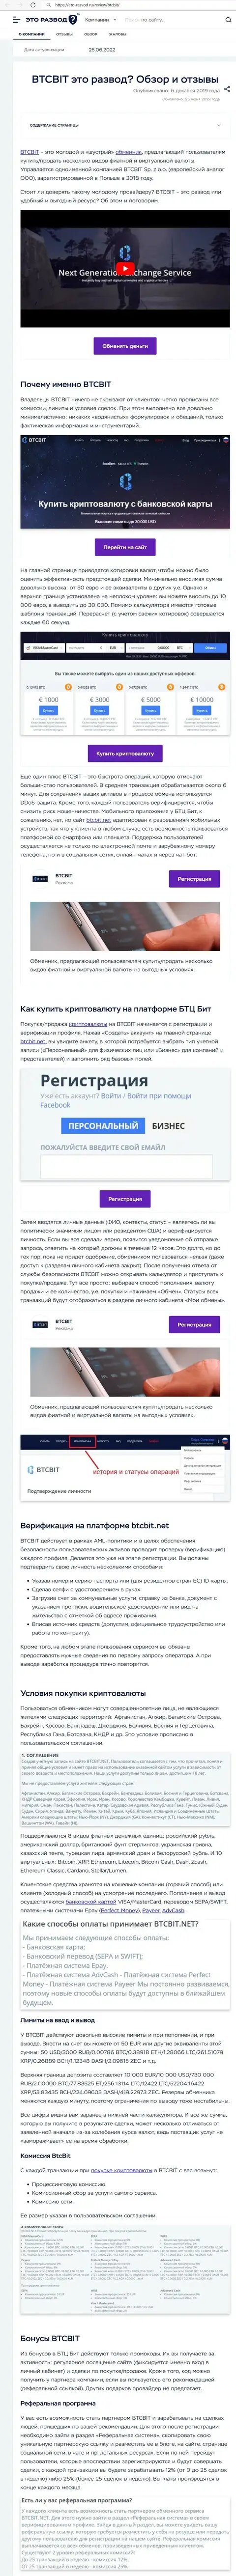 Обзор и условия для предоставления услуг обменного online пункта BTCBit Net в обзорной статье на информационном портале eto razvod ru